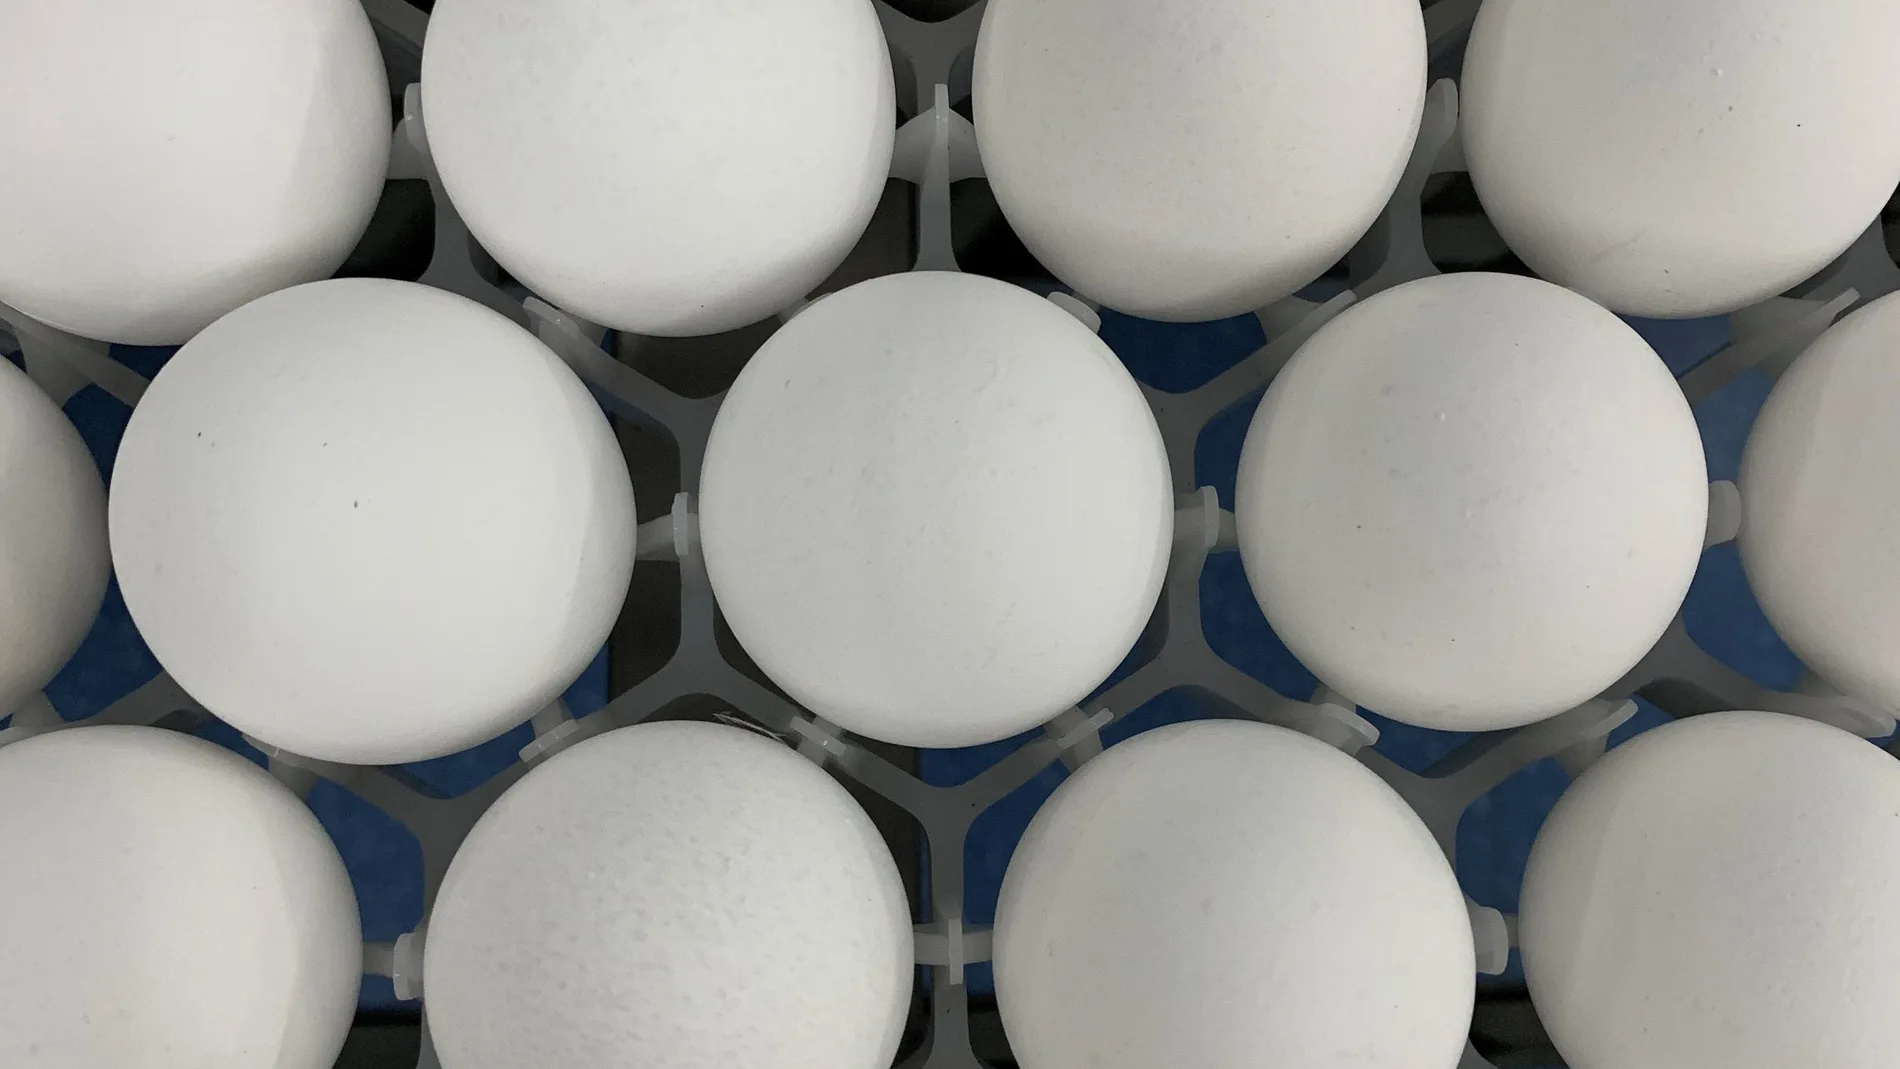 ACOMPAÑA CRÓNICA: COERONAVIRUS BRASIL - AME7367. SAO PAULO (BRASIL), 21/06/2021.- Detalle de varios huevos de gallina en un laboratorio el 18 de junio de 2021, en Sao Paulo (Brasil). Los científicos brasileños trabajan a contrarreloj para producir el primer inmunizante anticovid de un país que ya supera el medio millón de muertos. El reto: conseguir veinte millones de huevos de gallina para fabricar 40 millones de dosis de la vacuna. El fármaco, bautizado como Butanvac, está siendo desarrollado por el Butantan, uno de los laboratorios de referencia en Brasil y que actualmente es responsable de la producción local de la Coronavac, la vacuna ideada por la china Sinovac. EFE/ Alba Santandreau